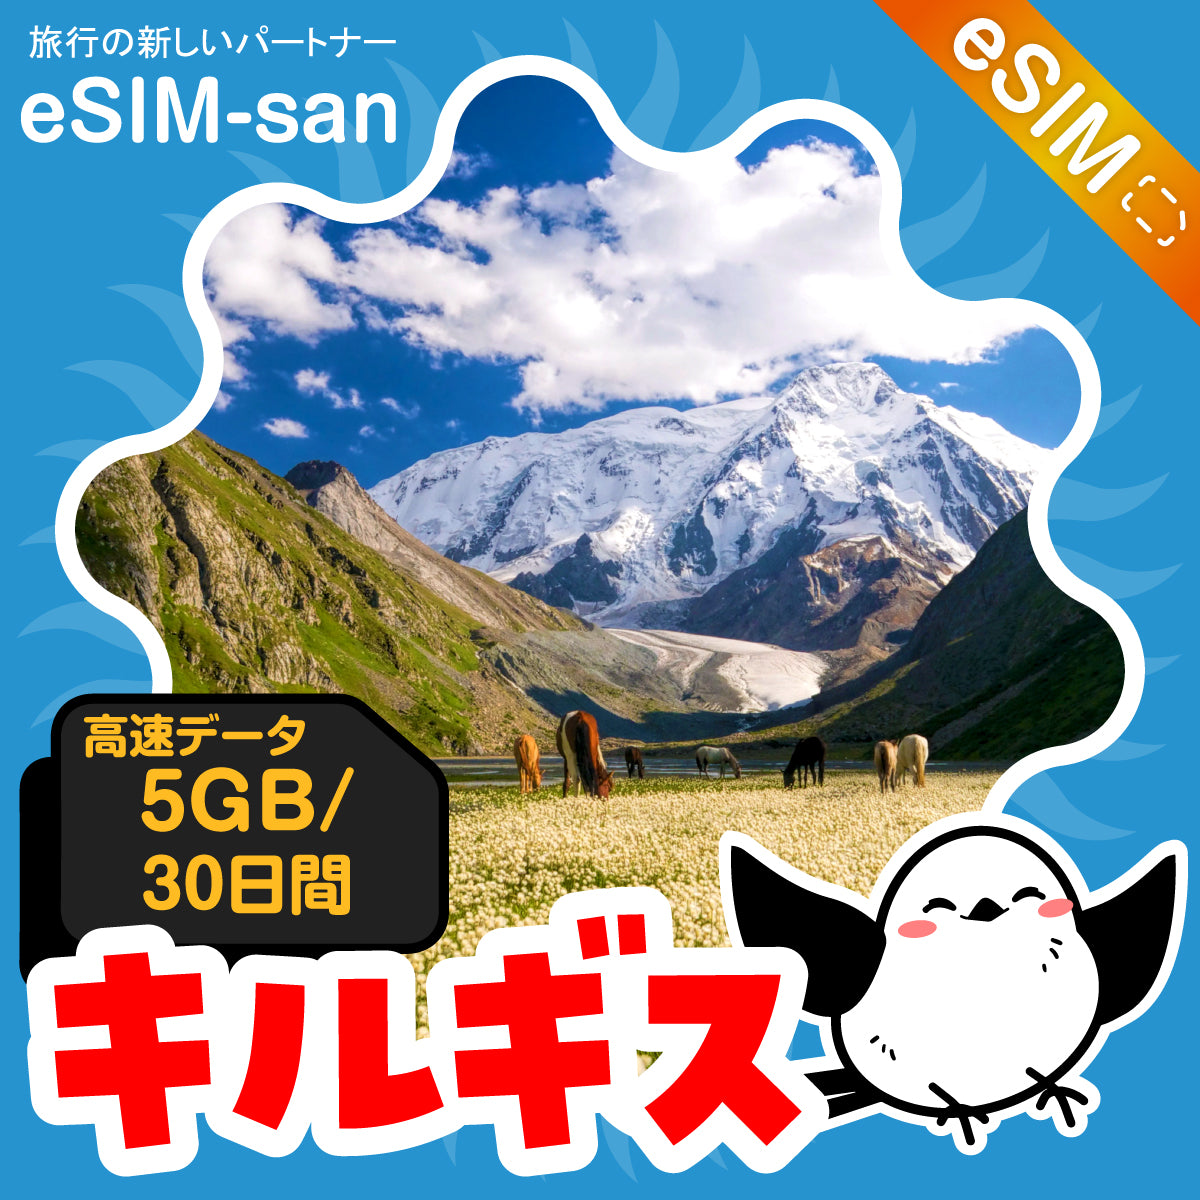 キルギスeSIMの5GBプラン画像_eSIM-san